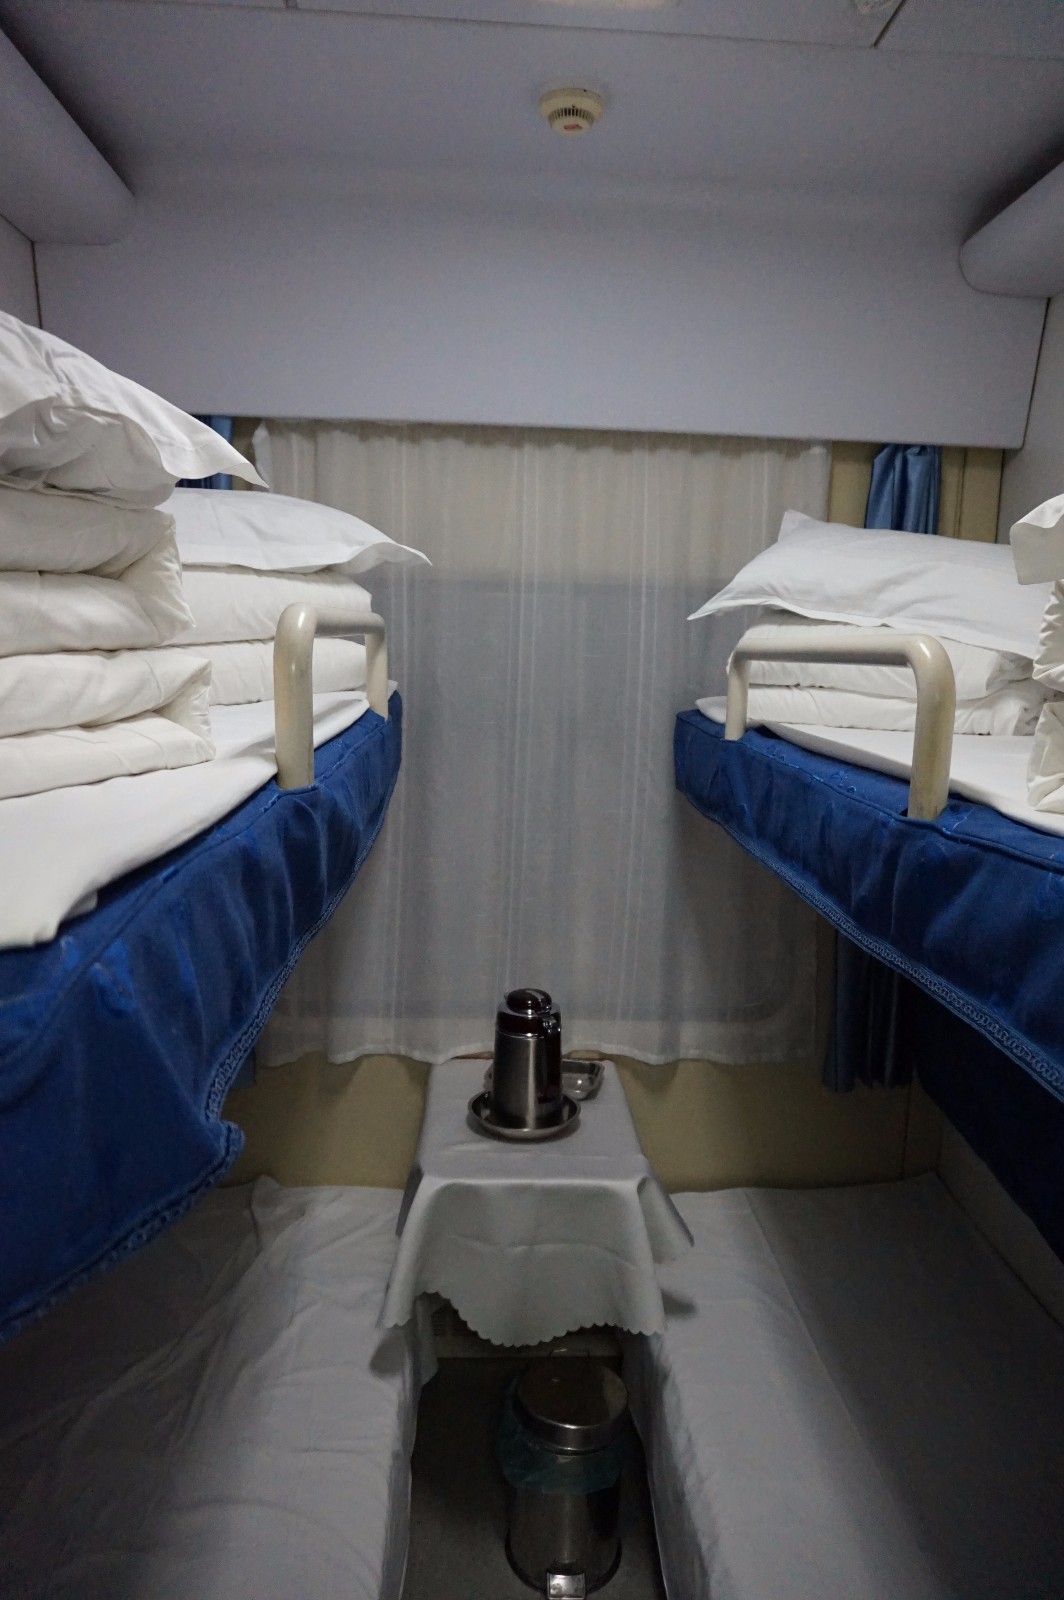 软卧车厢每间房间里有4个床位,床单和枕头是放在上铺的位置,下铺的两